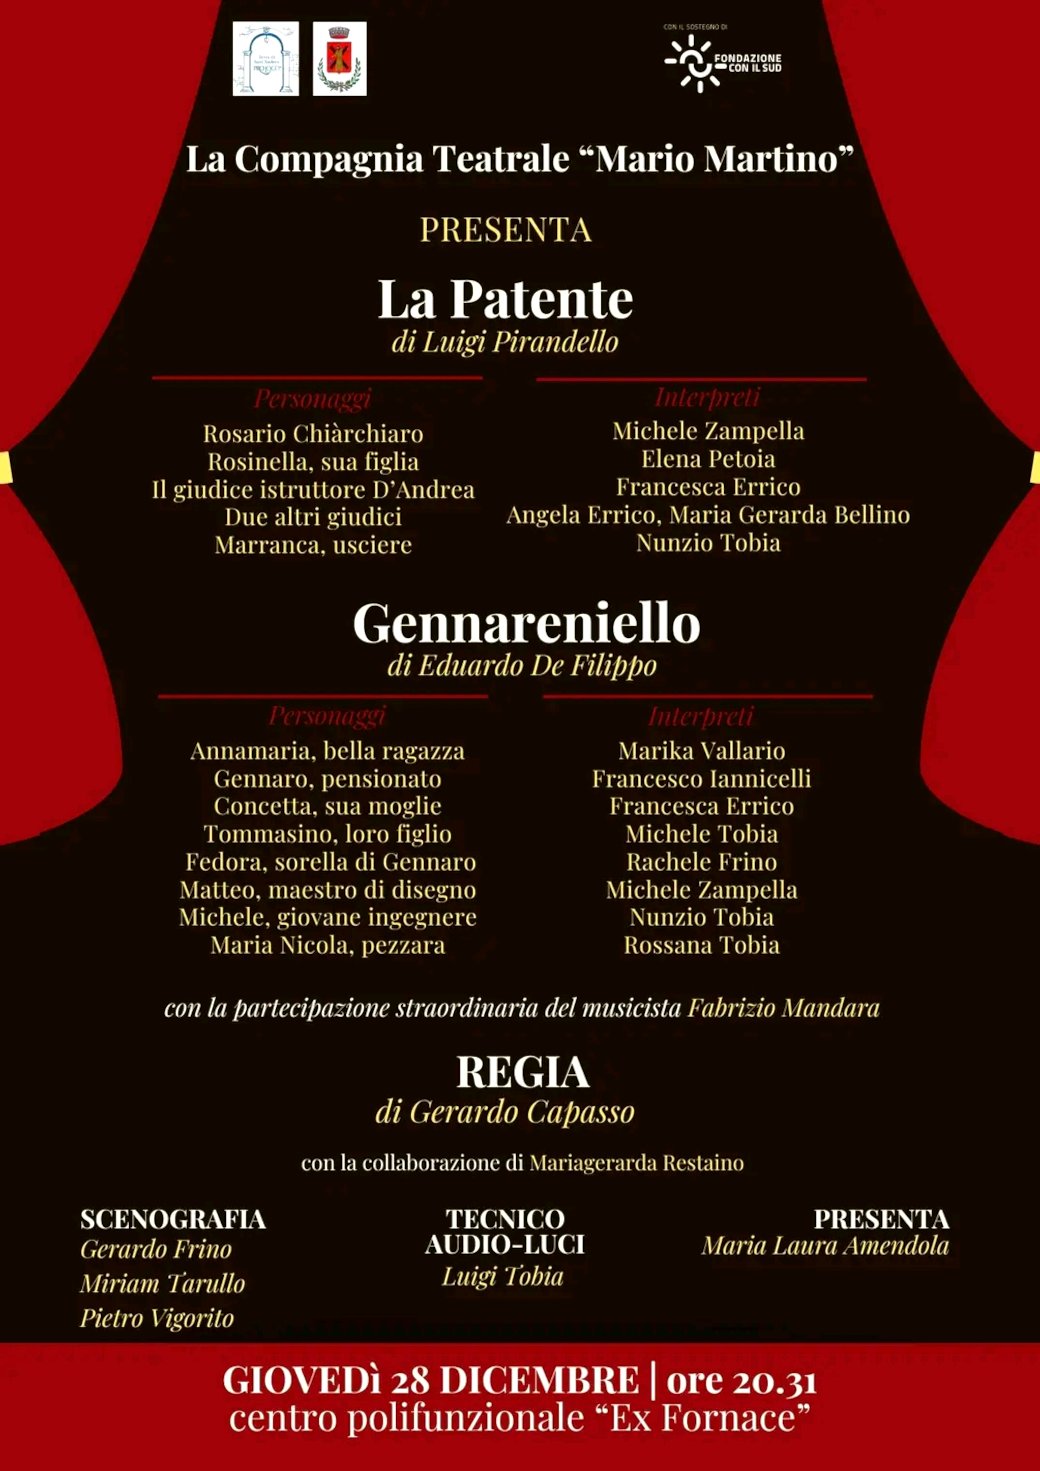 La Patente (di Luigi Pirandello) e Gennareniello (di Eduardo De Filippo)